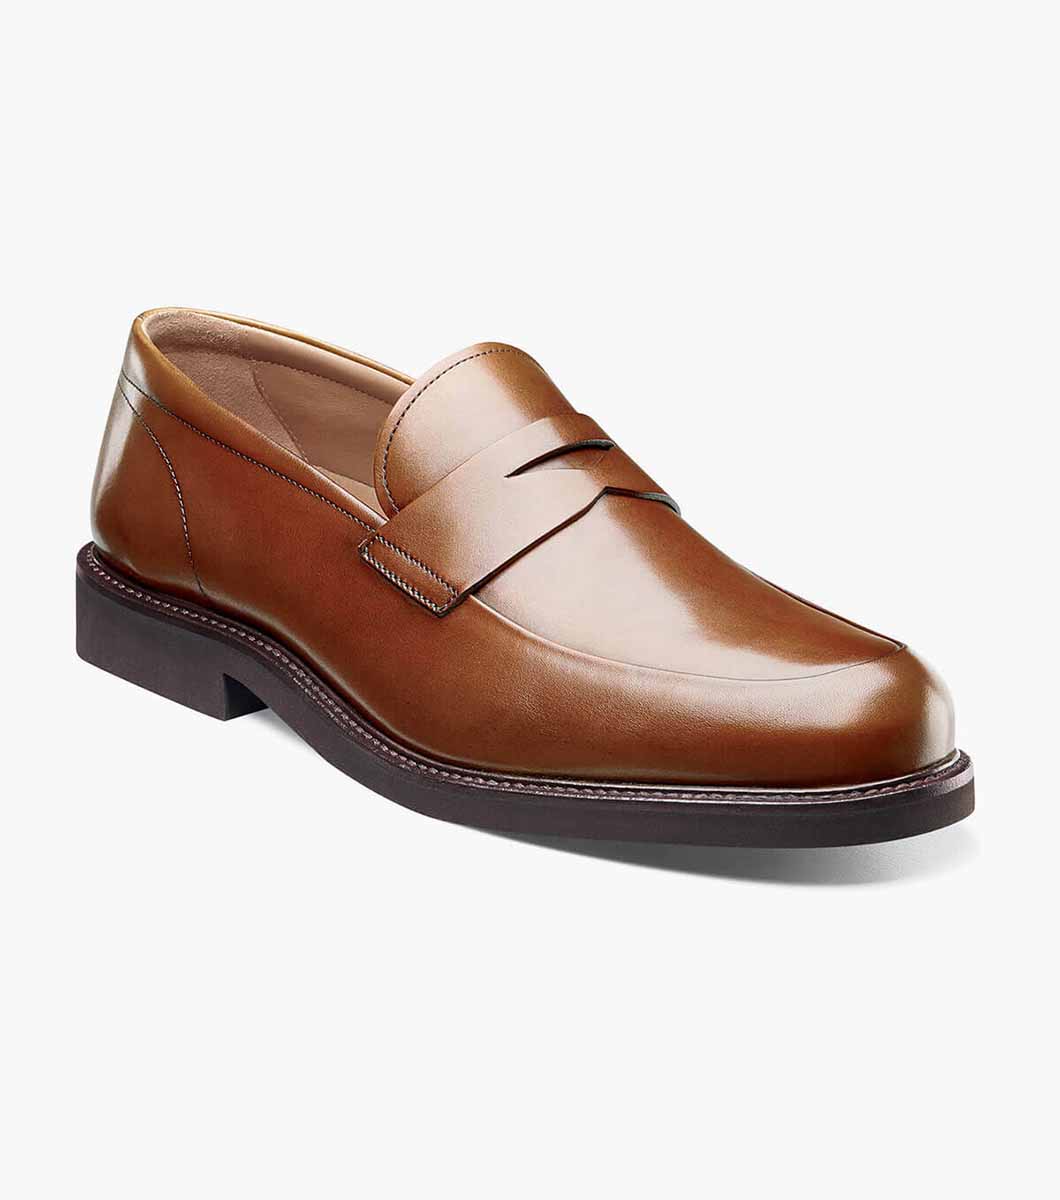 Men’s Dress Shoes | Cognac Moc Toe Penny Loafer | Florsheim Gallo